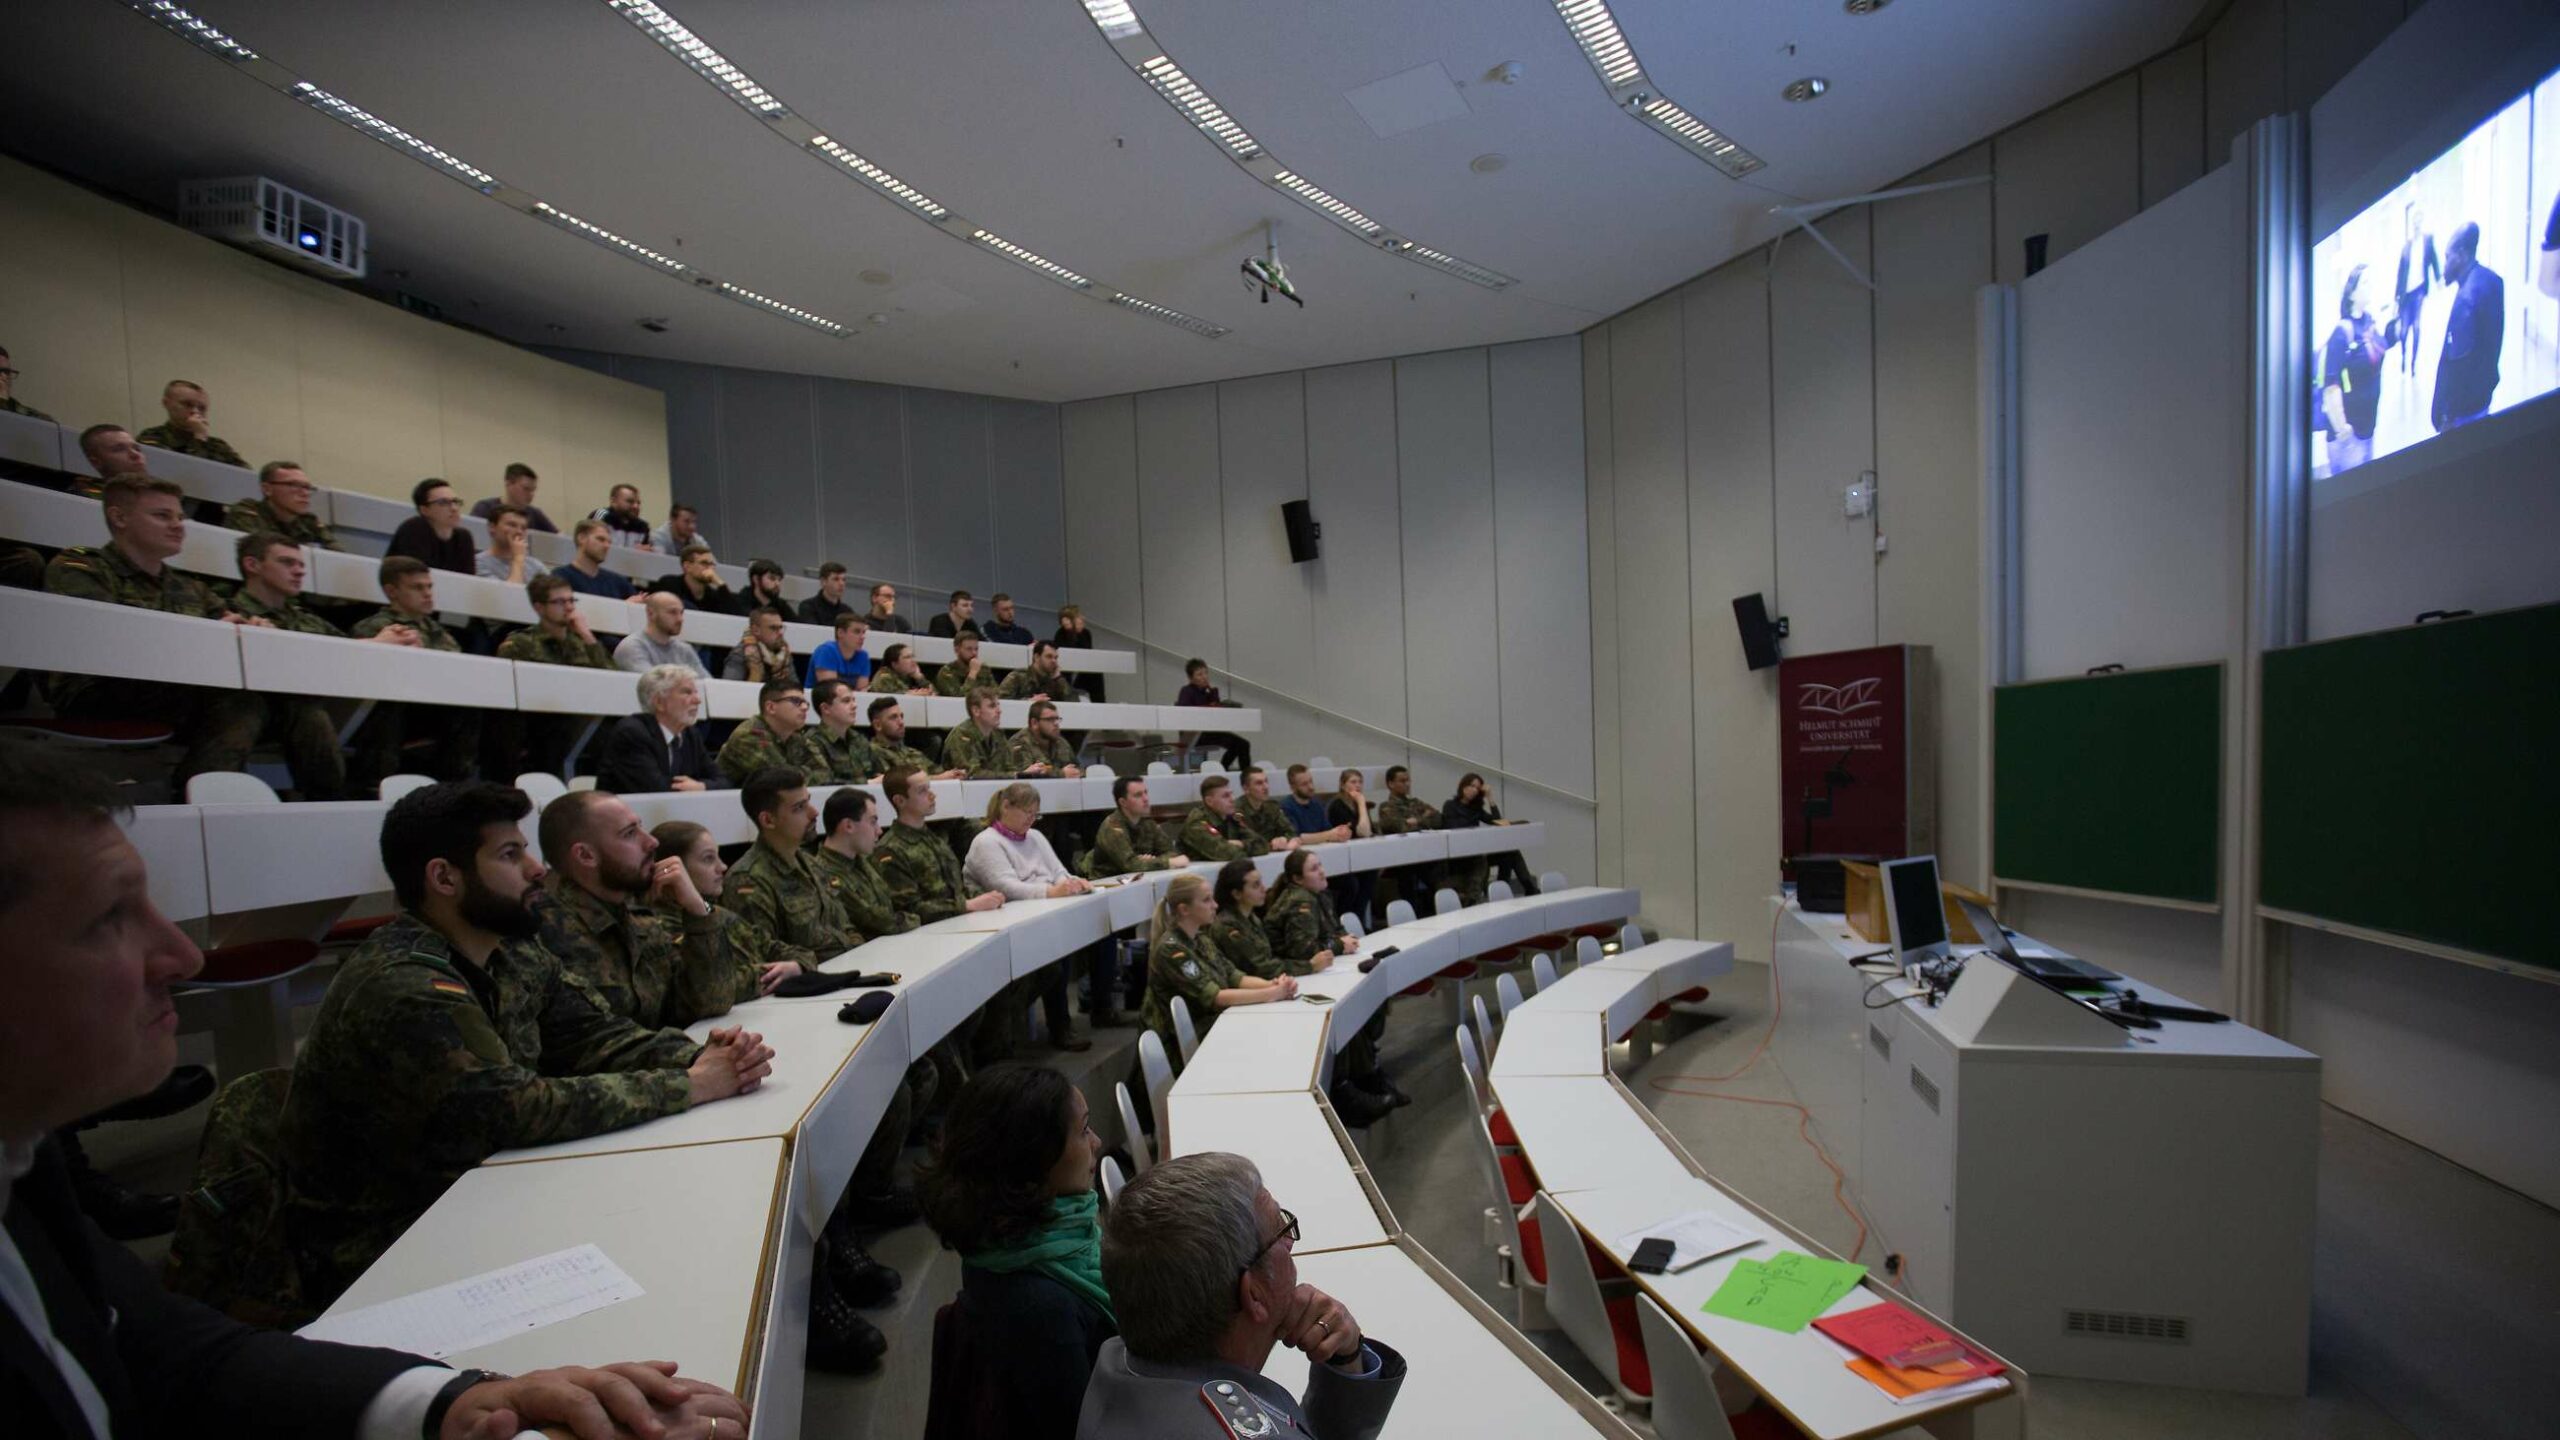 Die beiden Bundeswehr-Universitäten haben mit der Ausbildung des künftigen Offiziernachwuchses einen besonderen Lehrauftrag.